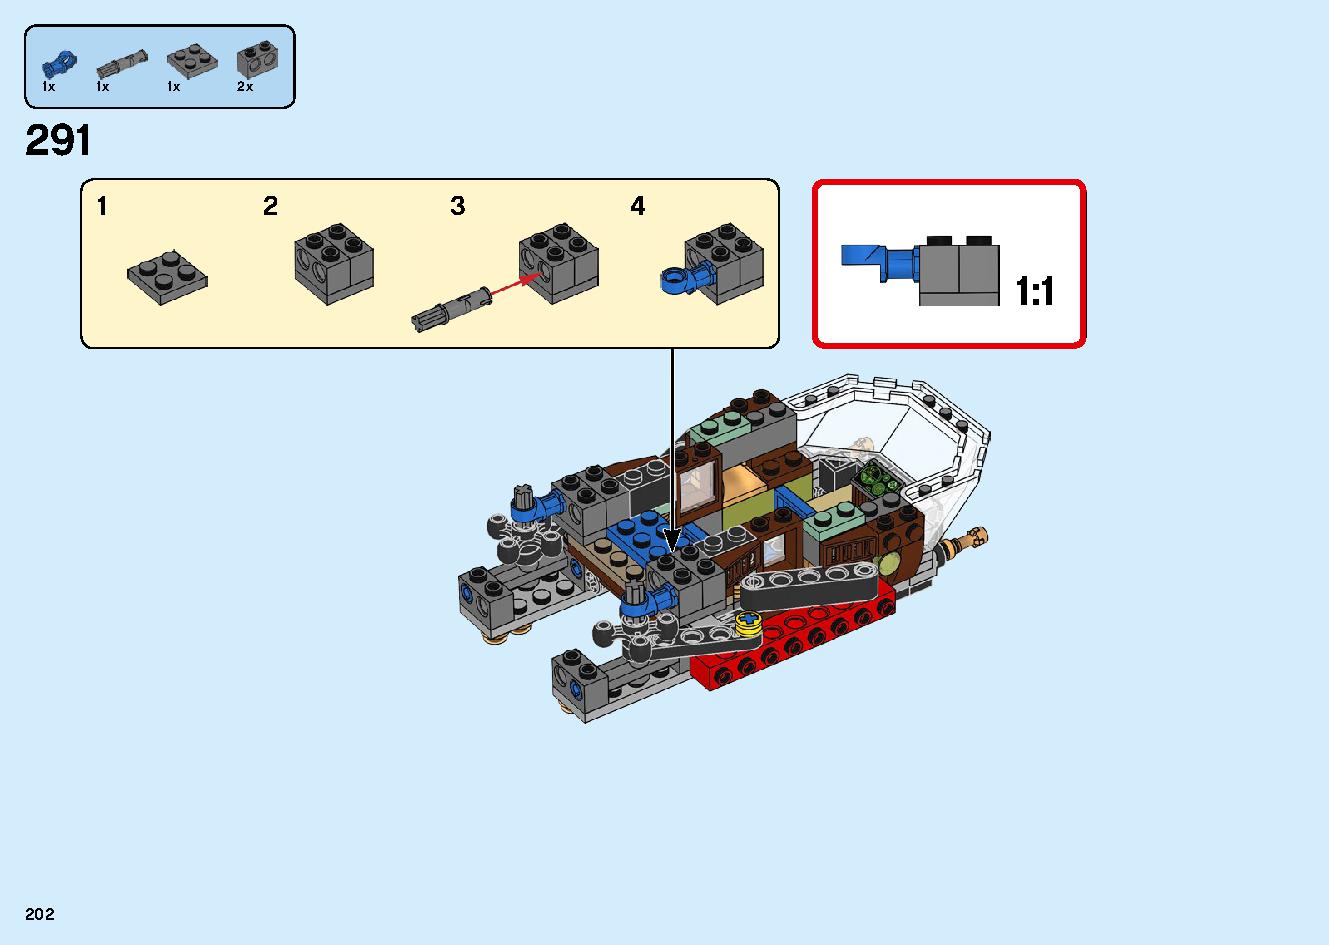 陸上戦艦バウンティ号 70677 レゴの商品情報 レゴの説明書・組立方法 202 page